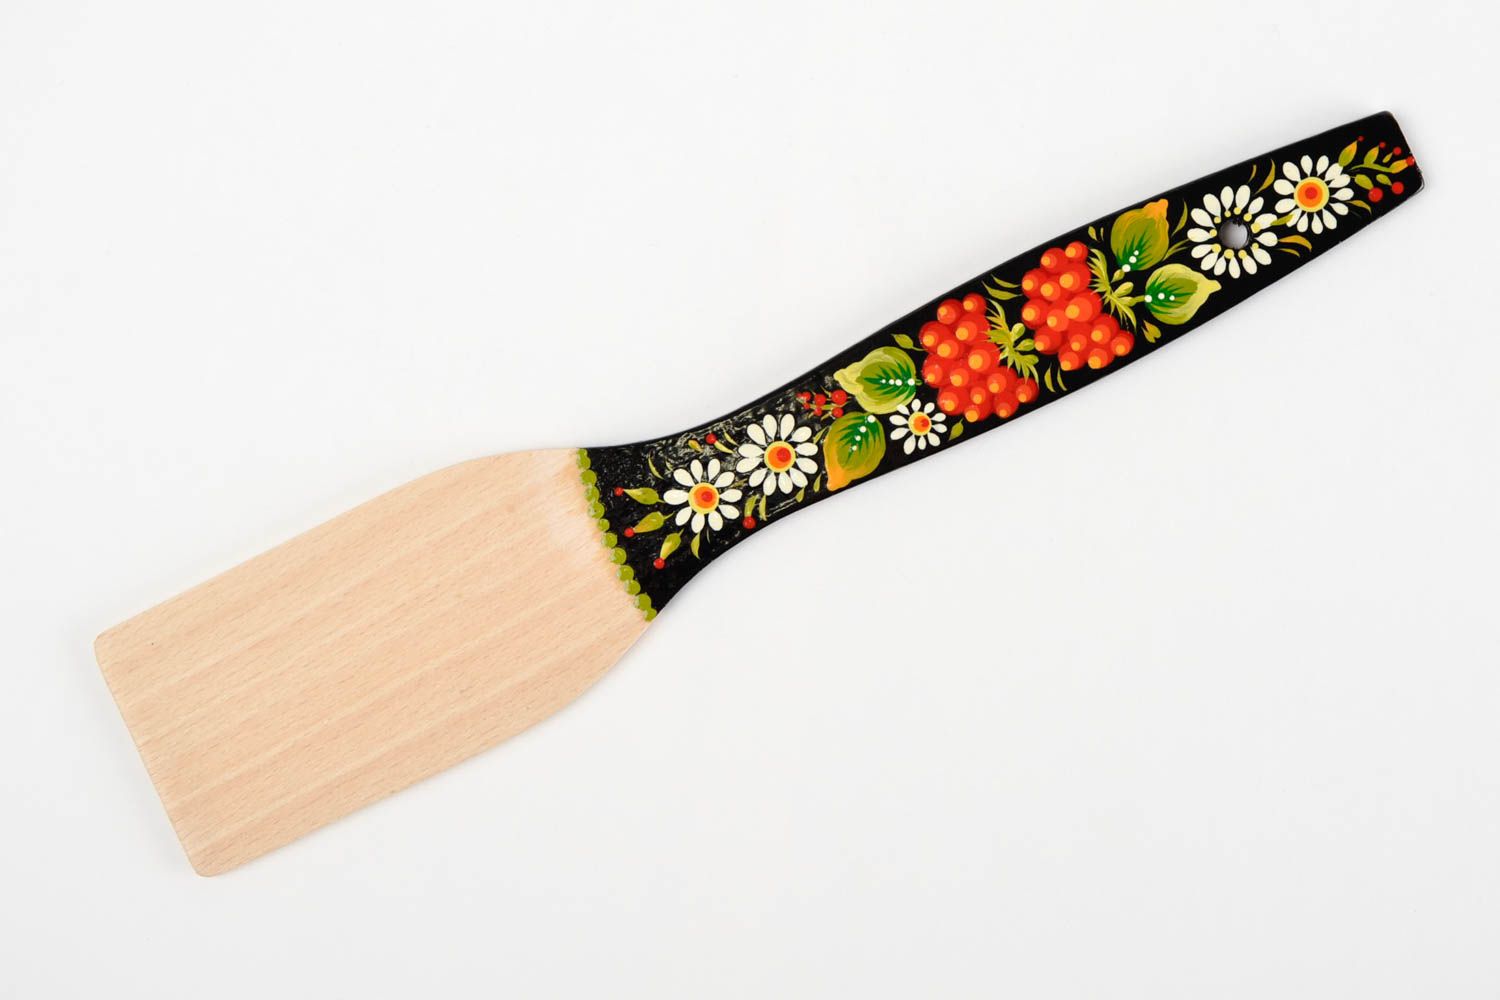 Деревянная лопатка ручной работы аксессуар для кухни деревянная посуда расписная фото 3